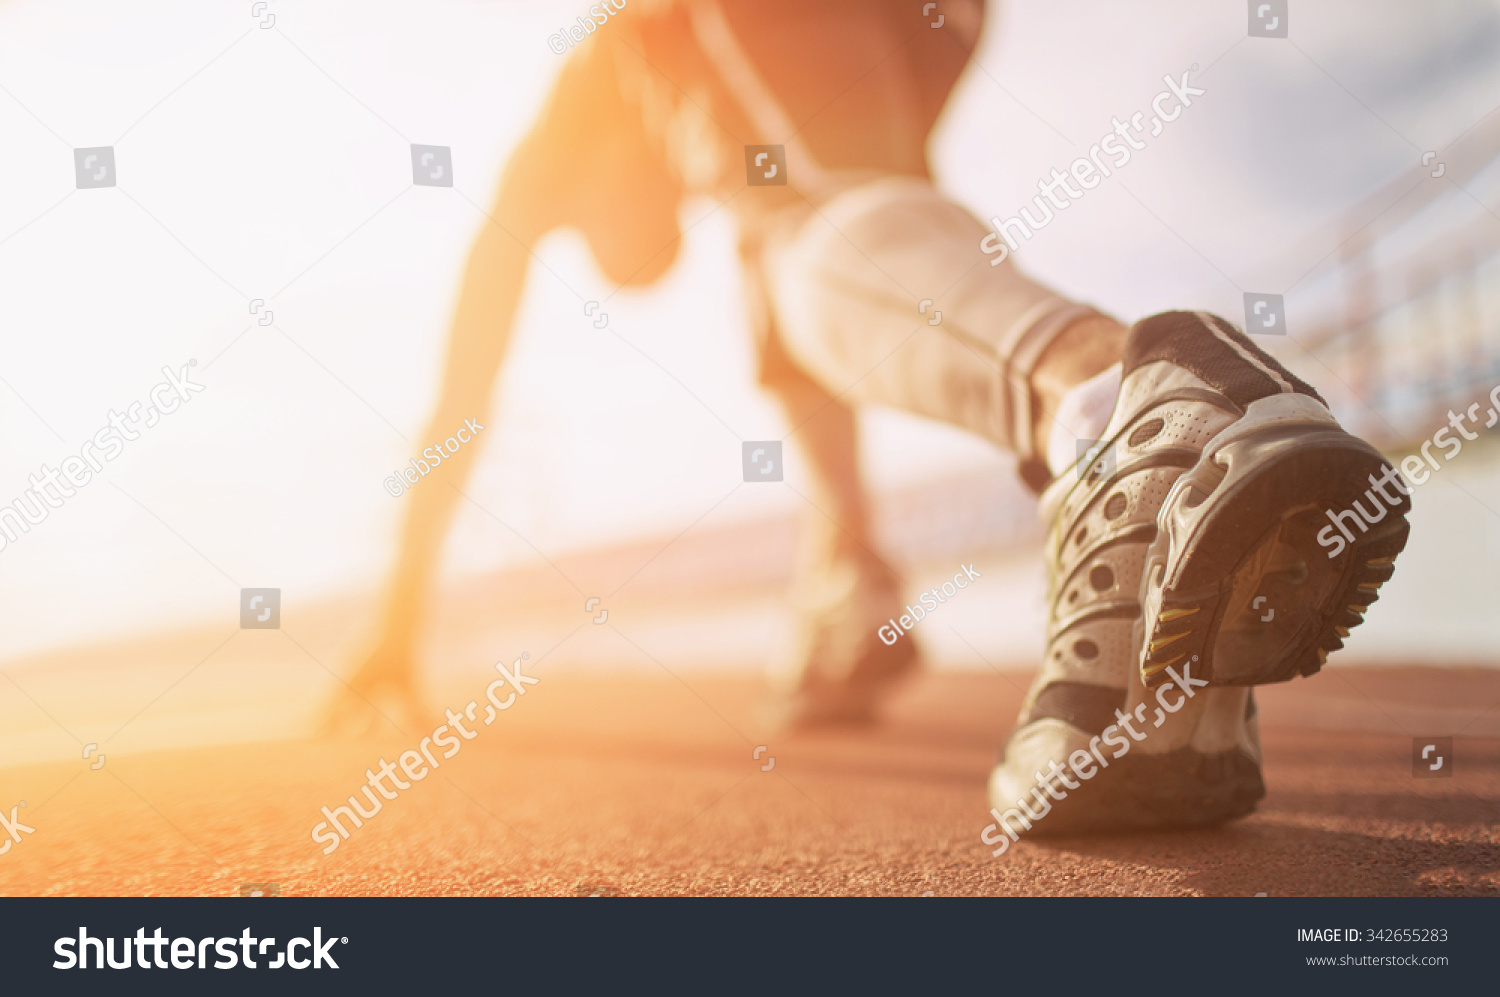 Athlete runner feet running on treadmill closeup on shoe #342655283